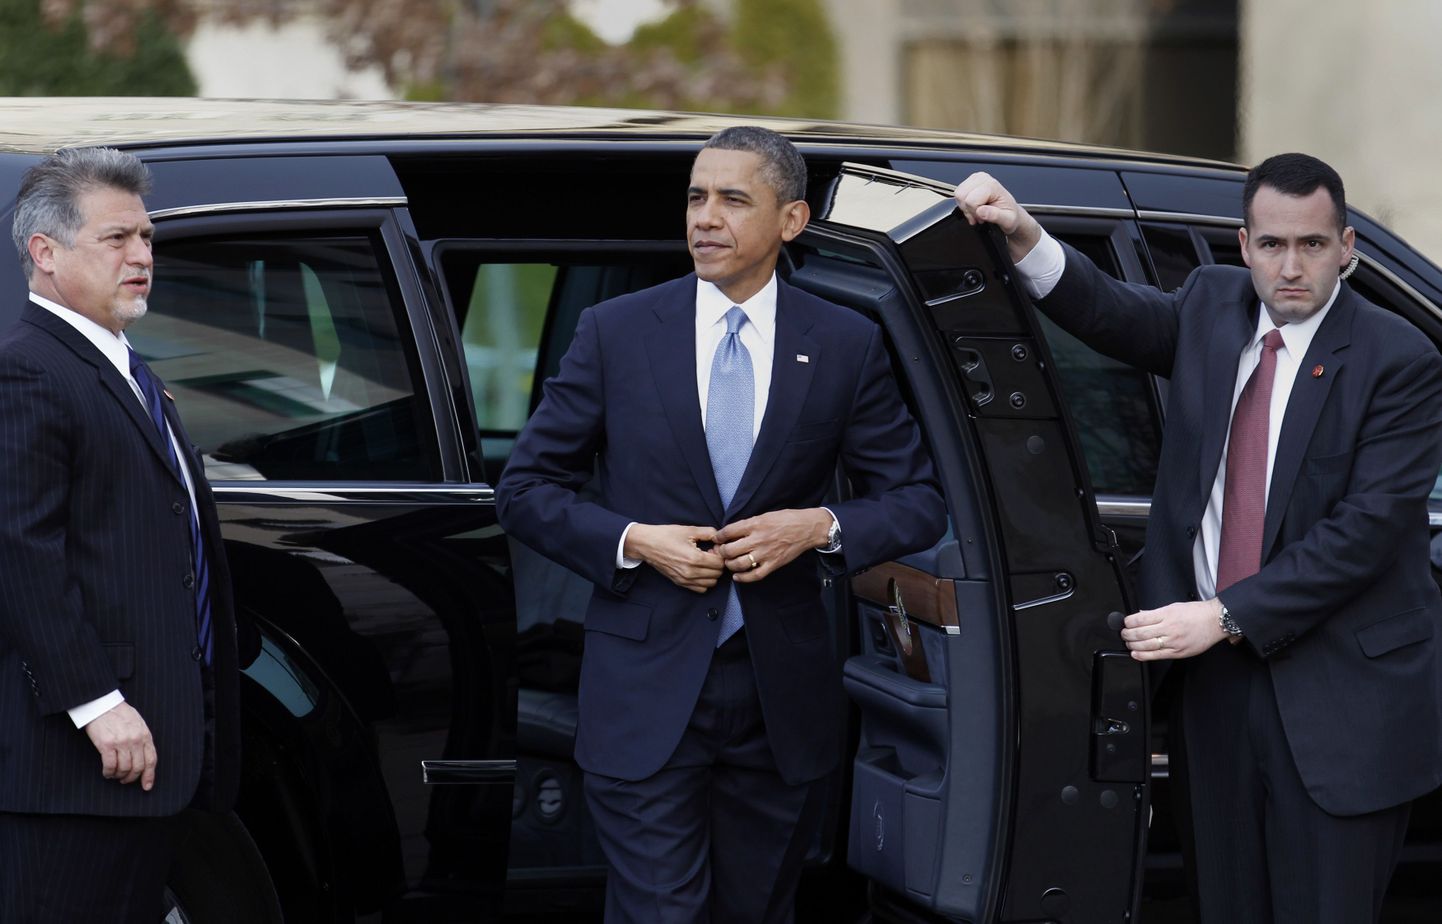 USA president Barack Obama annab ametivande veidi enne keskpäeva (Eesti aja järgi 19.00).